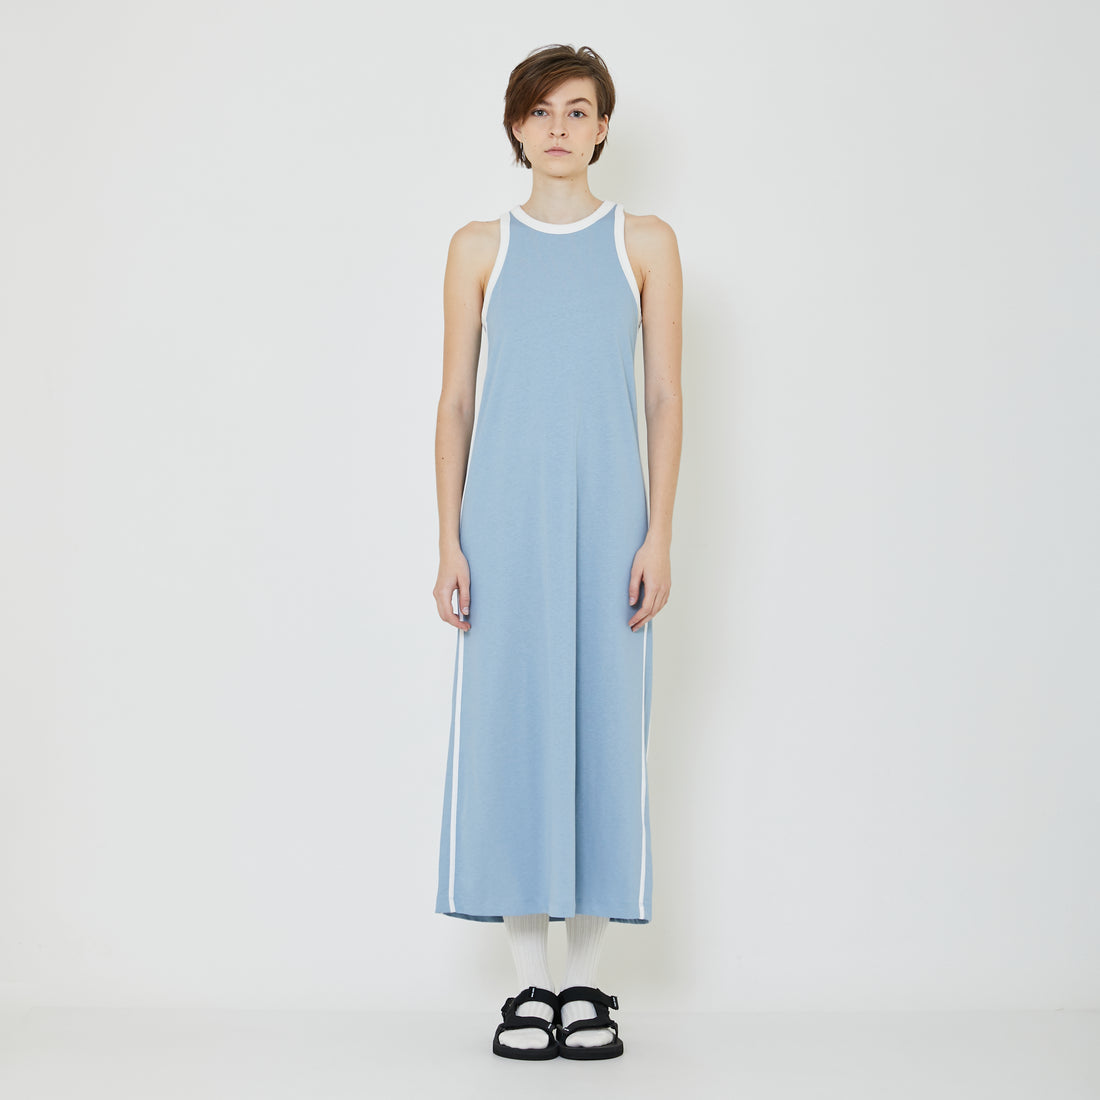 Women Contrast Maxi Dress - Dusty Blue - SW2401009A